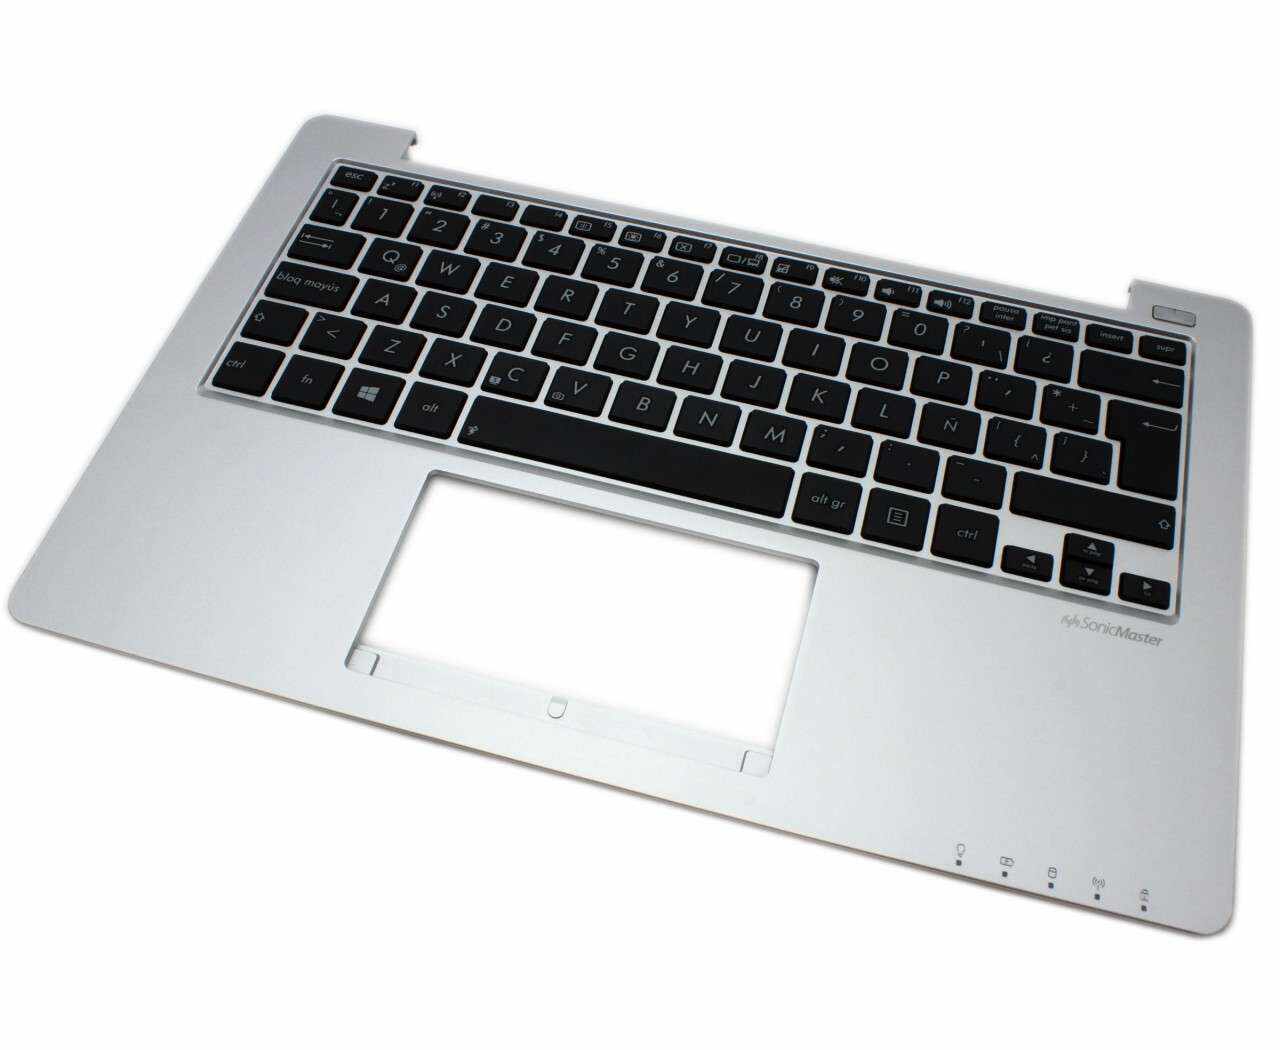 Tastatura Asus VivoBook S200E neagra cu Palmrest argintiu